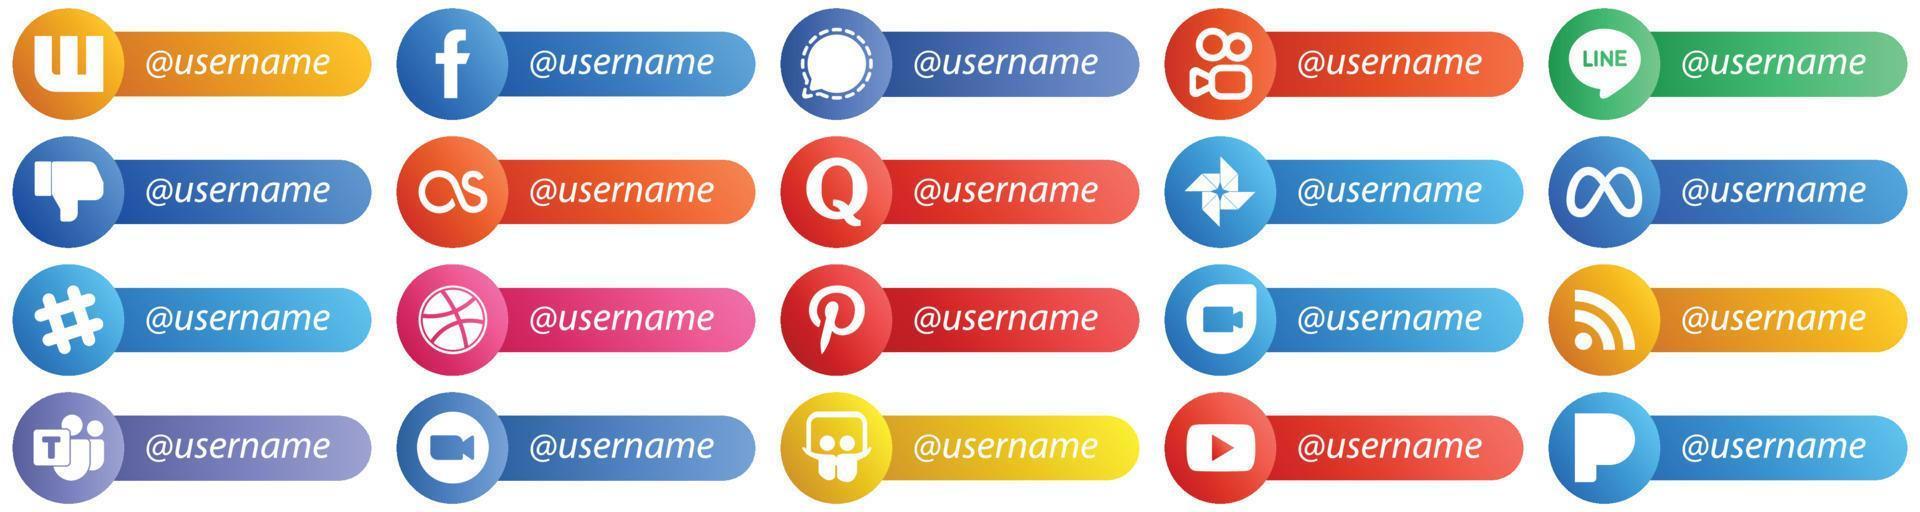 20 íconos de estilo de tarjeta para redes sociales populares con nombre de usuario como spotify. meta. línea. google foto e iconos de quora. alta definición y versátil vector